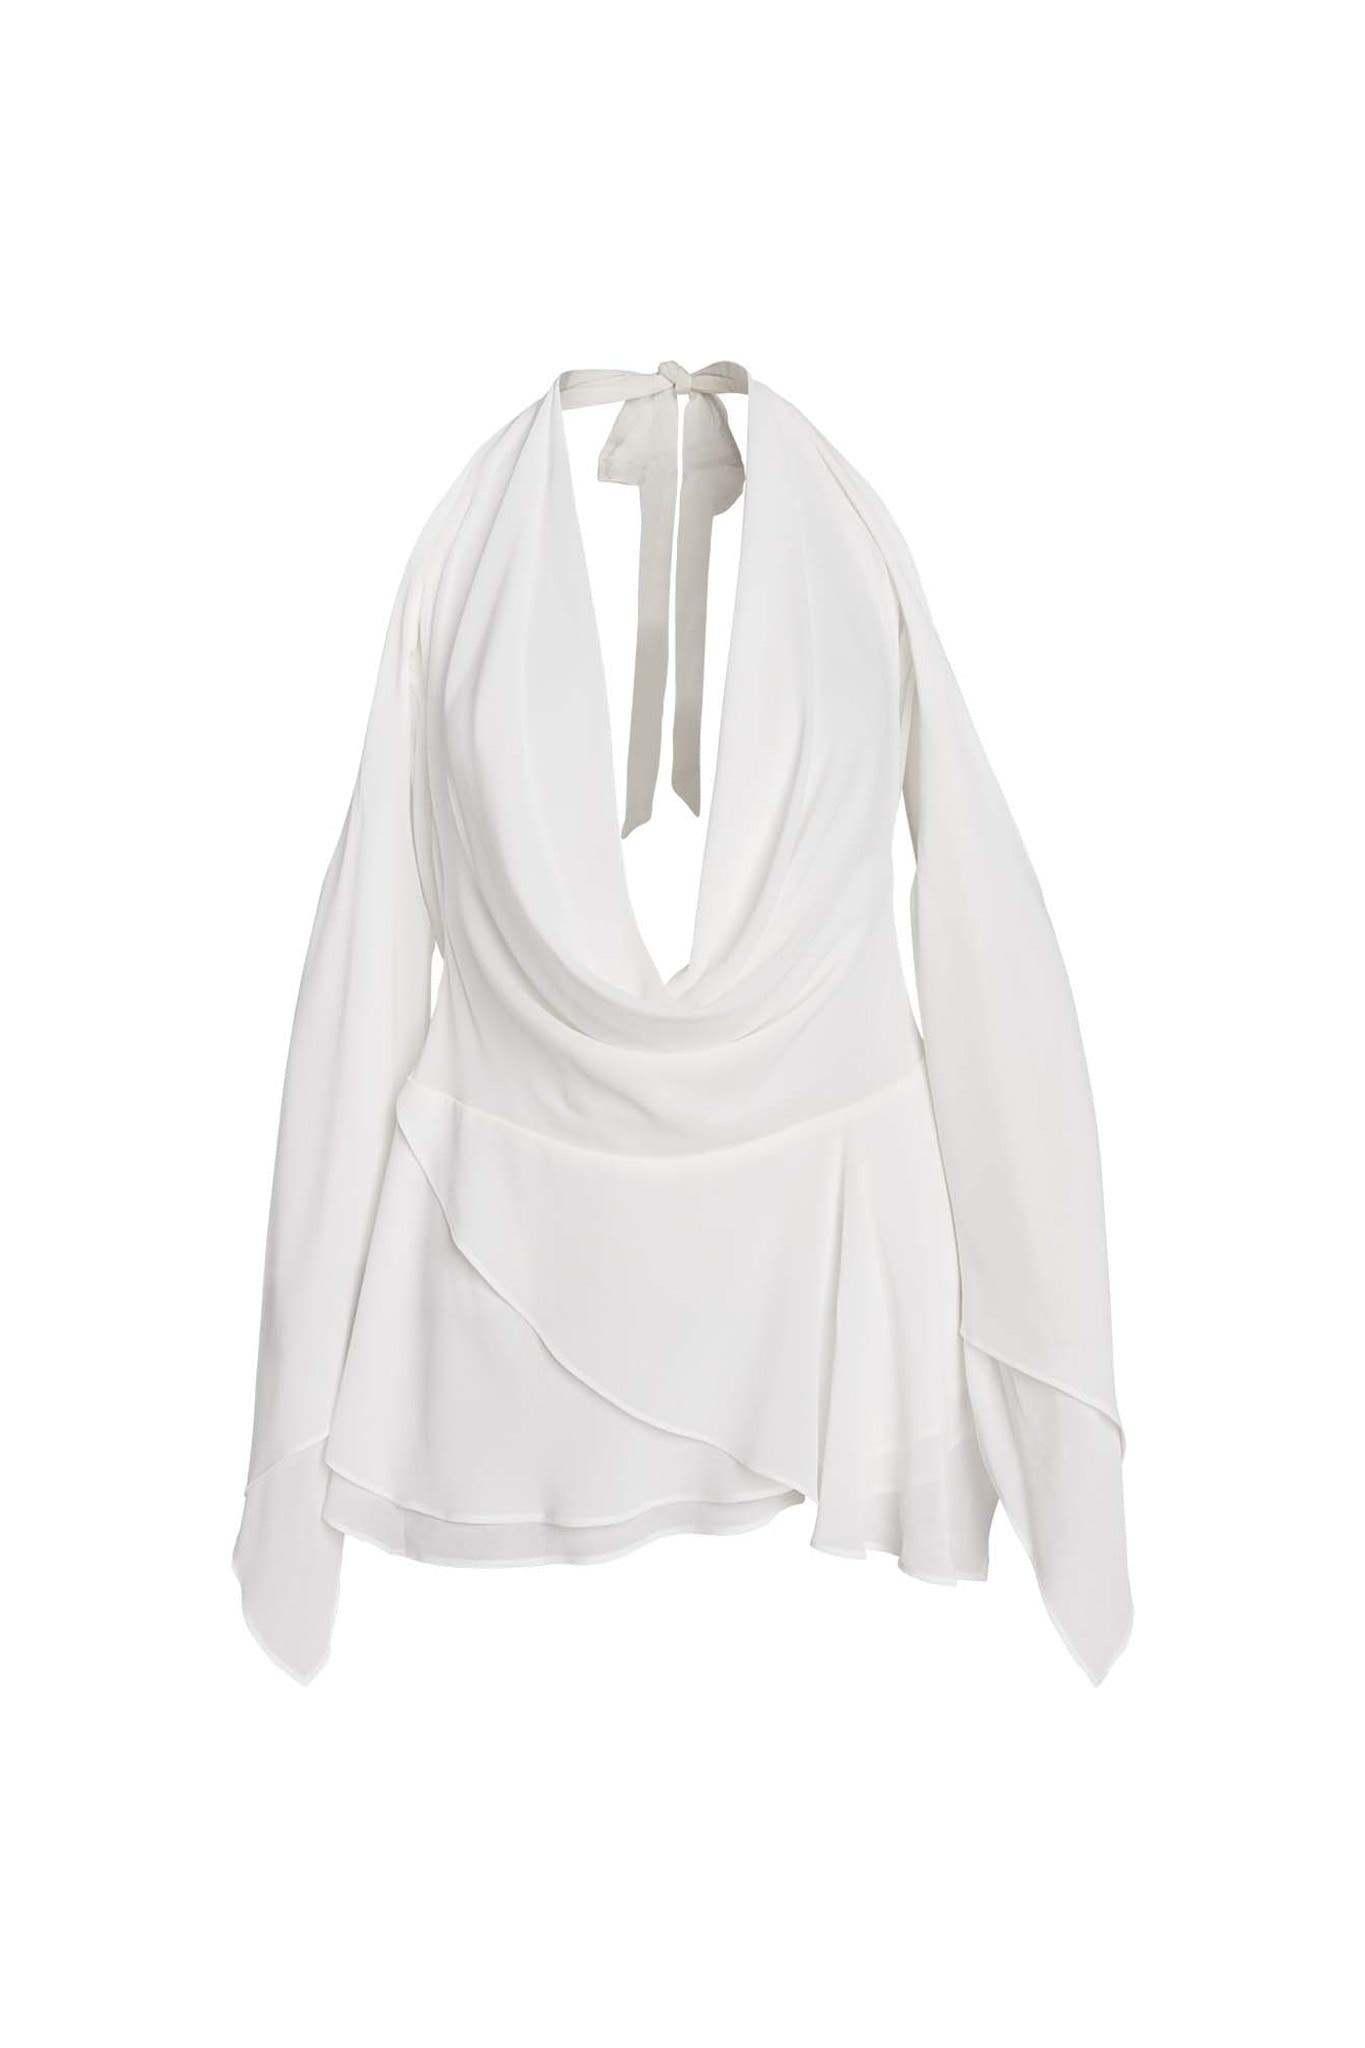 ROSANNA MINI DRESS - WHITE